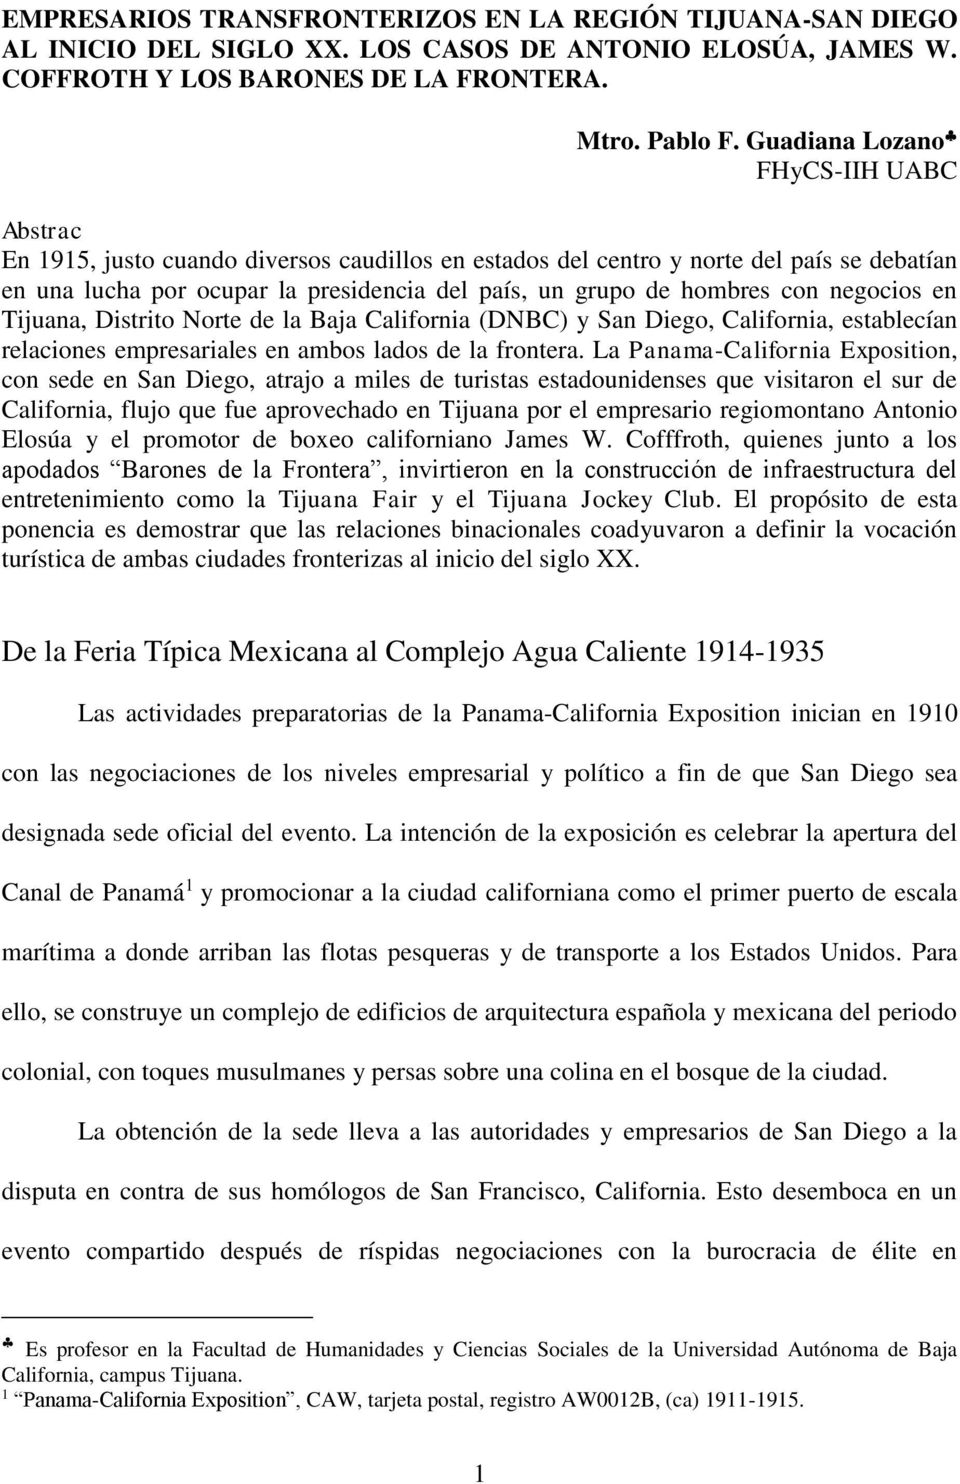 con negocios en Tijuana, Distrito Norte de la Baja California (DNBC) y San Diego, California, establecían relaciones empresariales en ambos lados de la frontera.